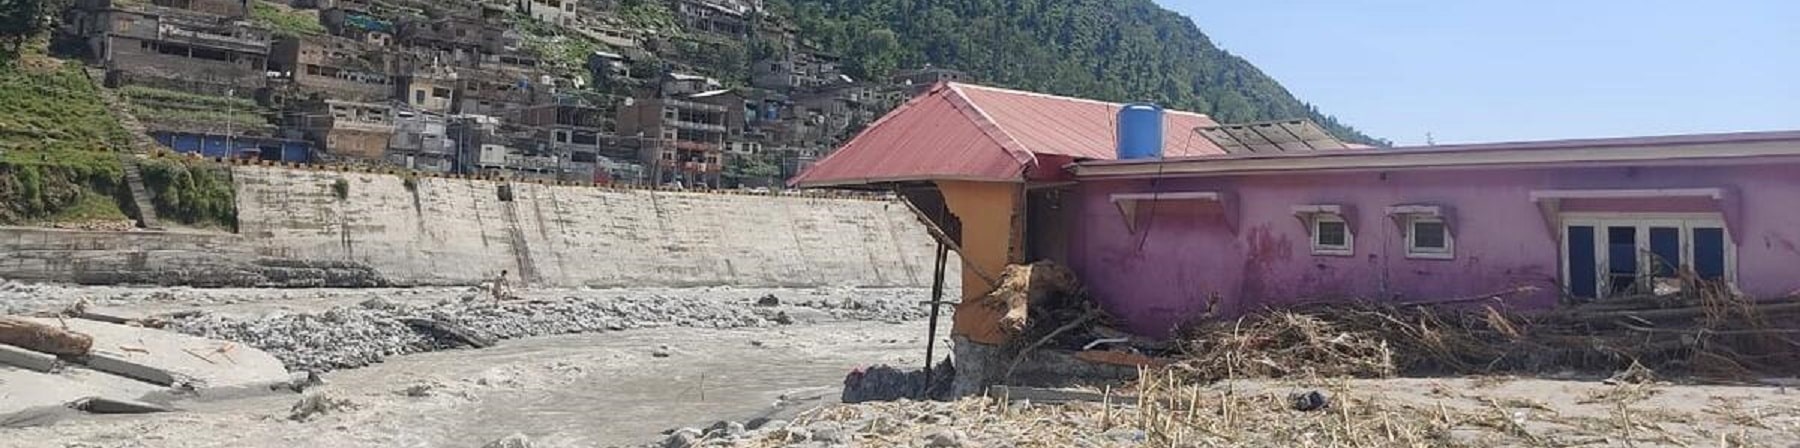 sulla destra edificio distrutto dall'inondazione in Pakistan